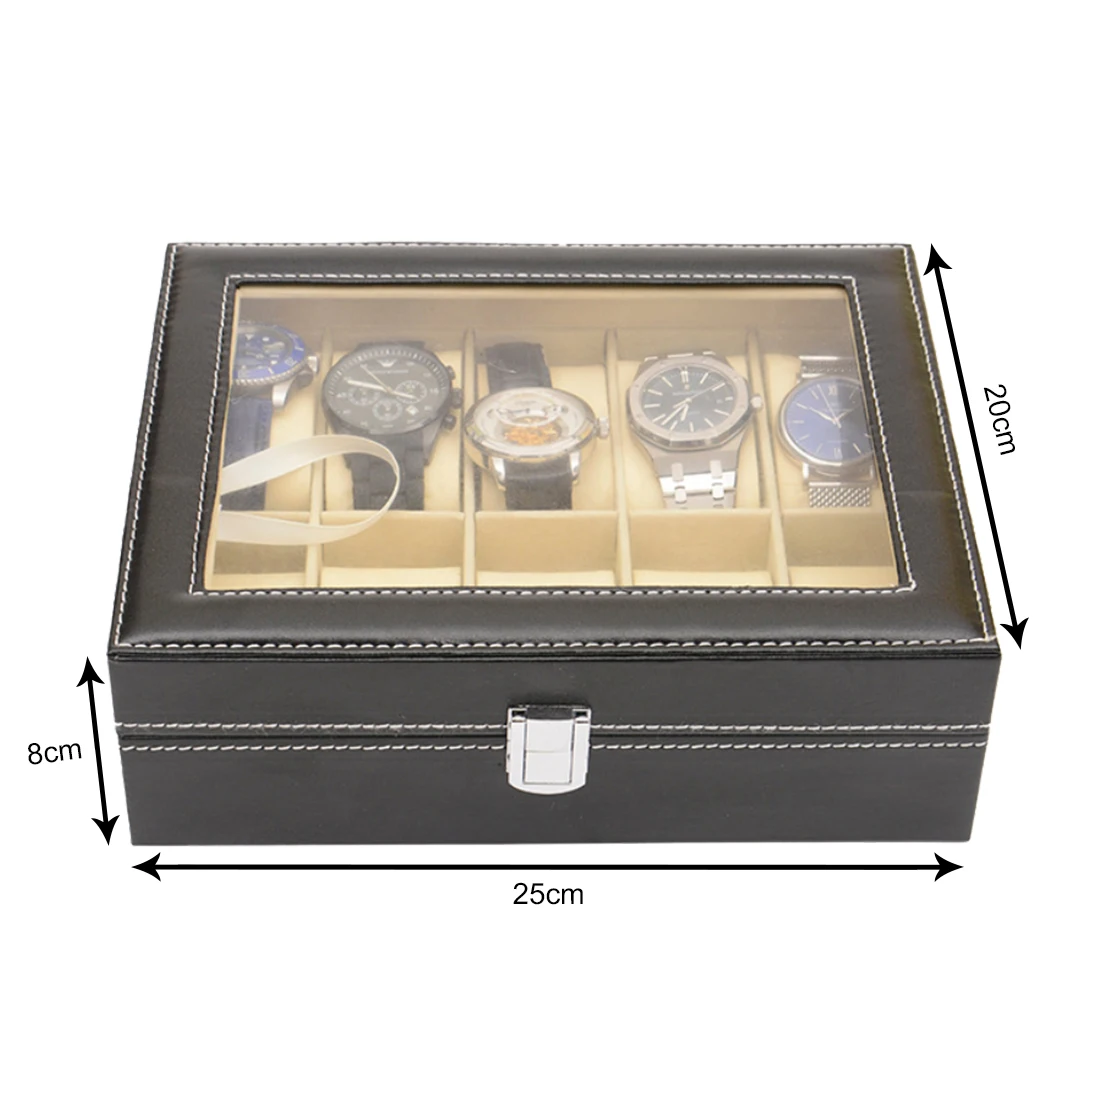 Витрина для часов ювелирный коллекционный Органайзер коробка из искусственной кожи сетка наручные часы коробка